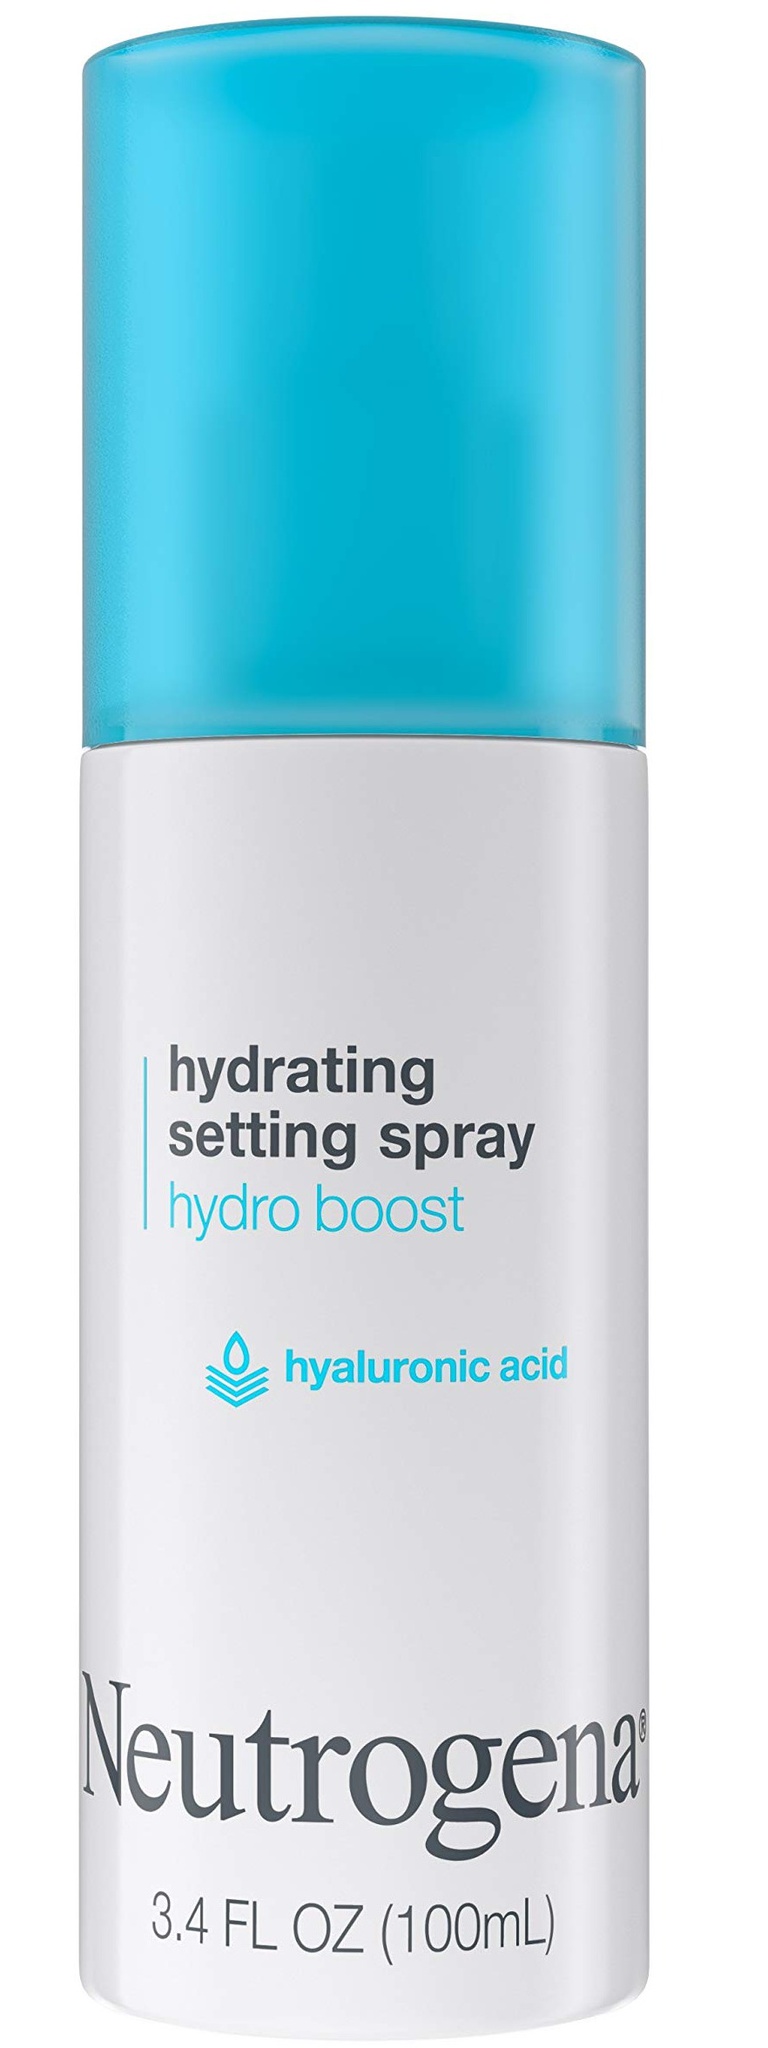 Neutrogena Hydrating Setting Spray